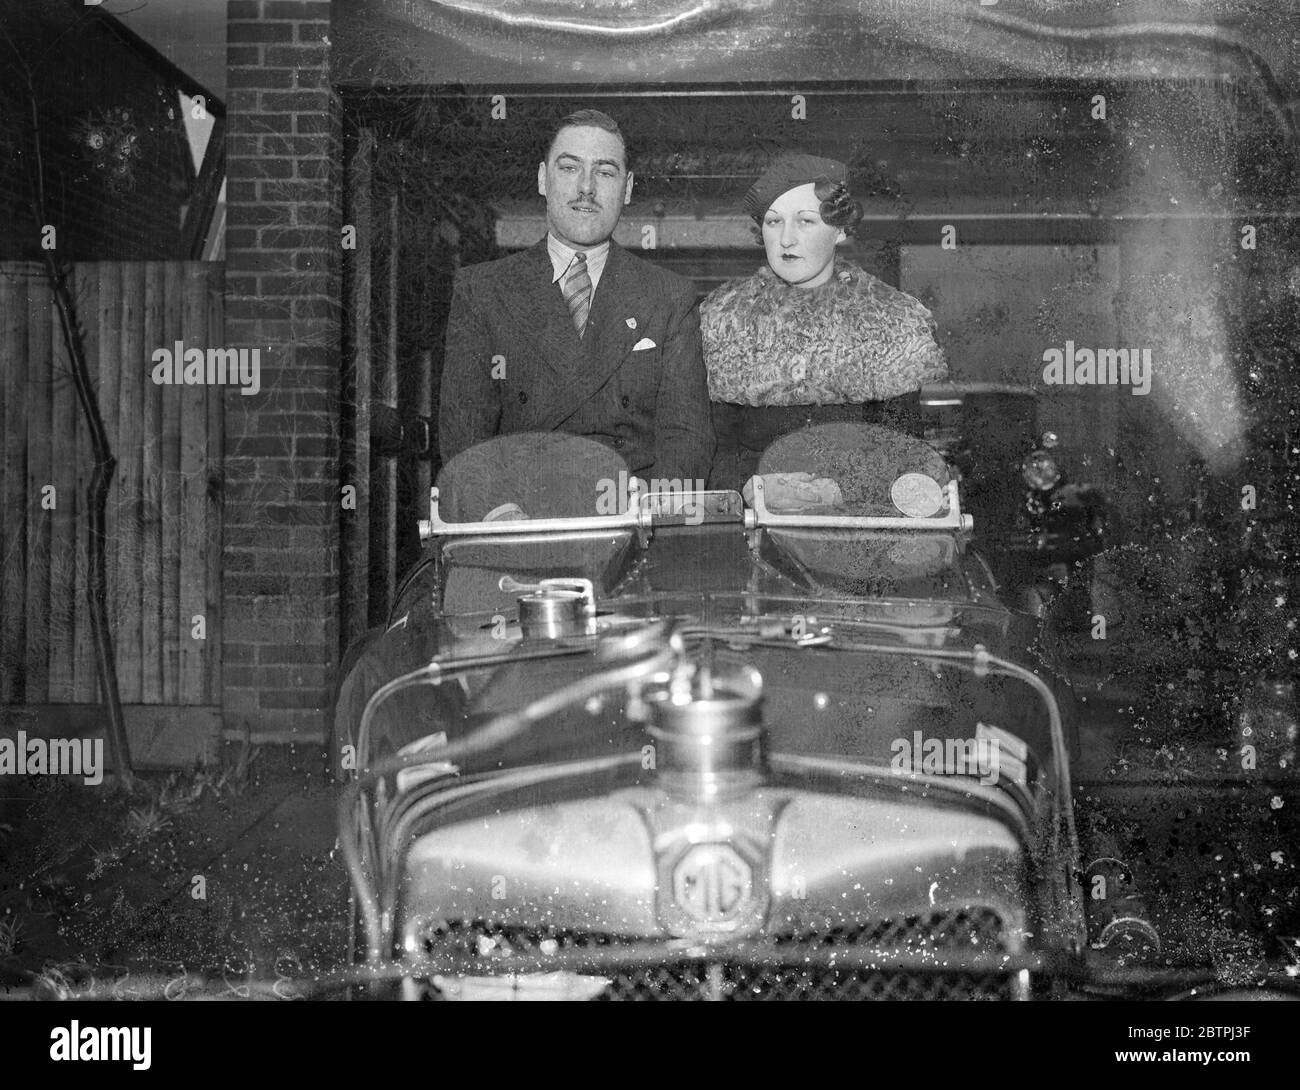 Pilote de course engagé . M. R A Yallop s'est engagé auprès de Miss June Limb et s'est assis dans sa MG sportscar . 29 décembre 1933 Banque D'Images